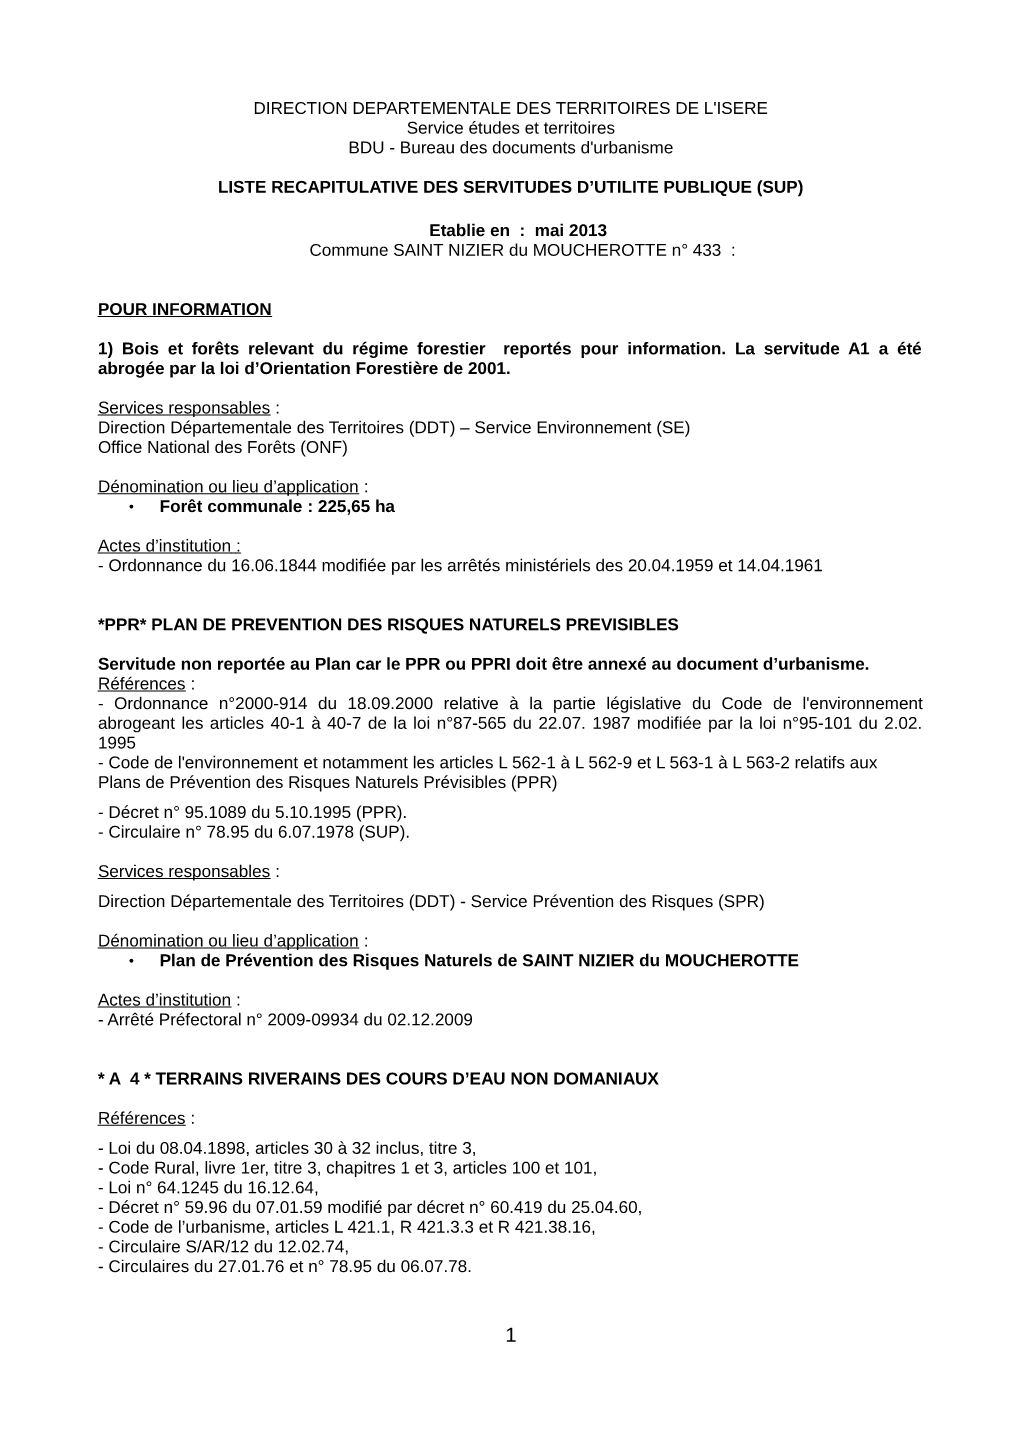 DIRECTION DEPARTEMENTALE DES TERRITOIRES DE L'isere Service Études Et Territoires BDU - Bureau Des Documents D'urbanisme